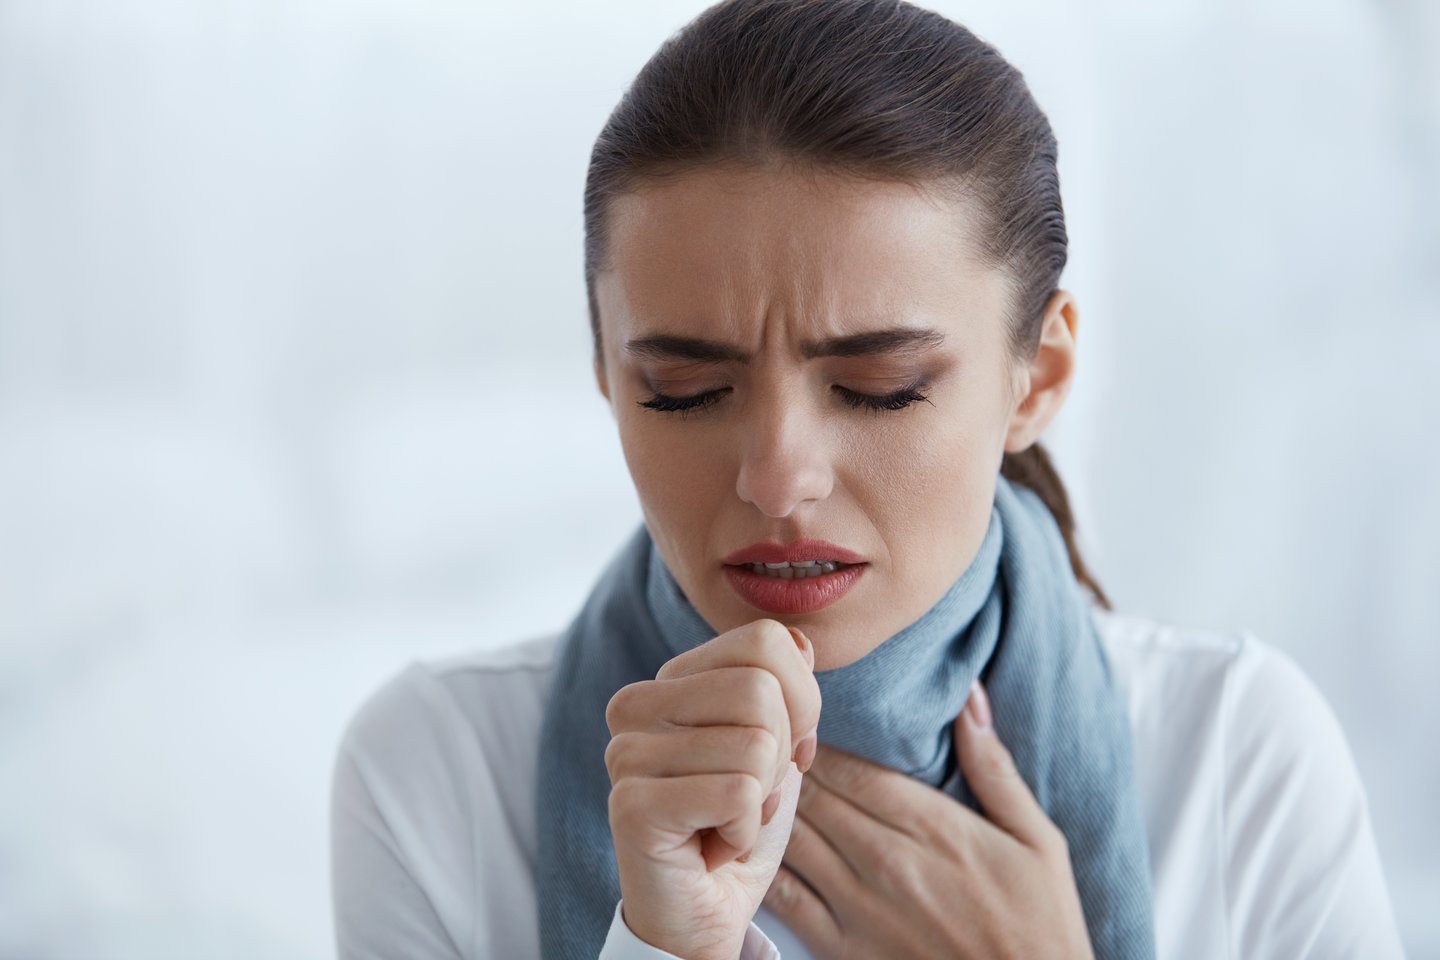 Ūminį bronchitą nuo paprasto kosulio atskirti nėra sudėtinga, jam būdingi viršutinių kvėpavimo takų infekcijos simptomai.<br> 123rf nuotr.